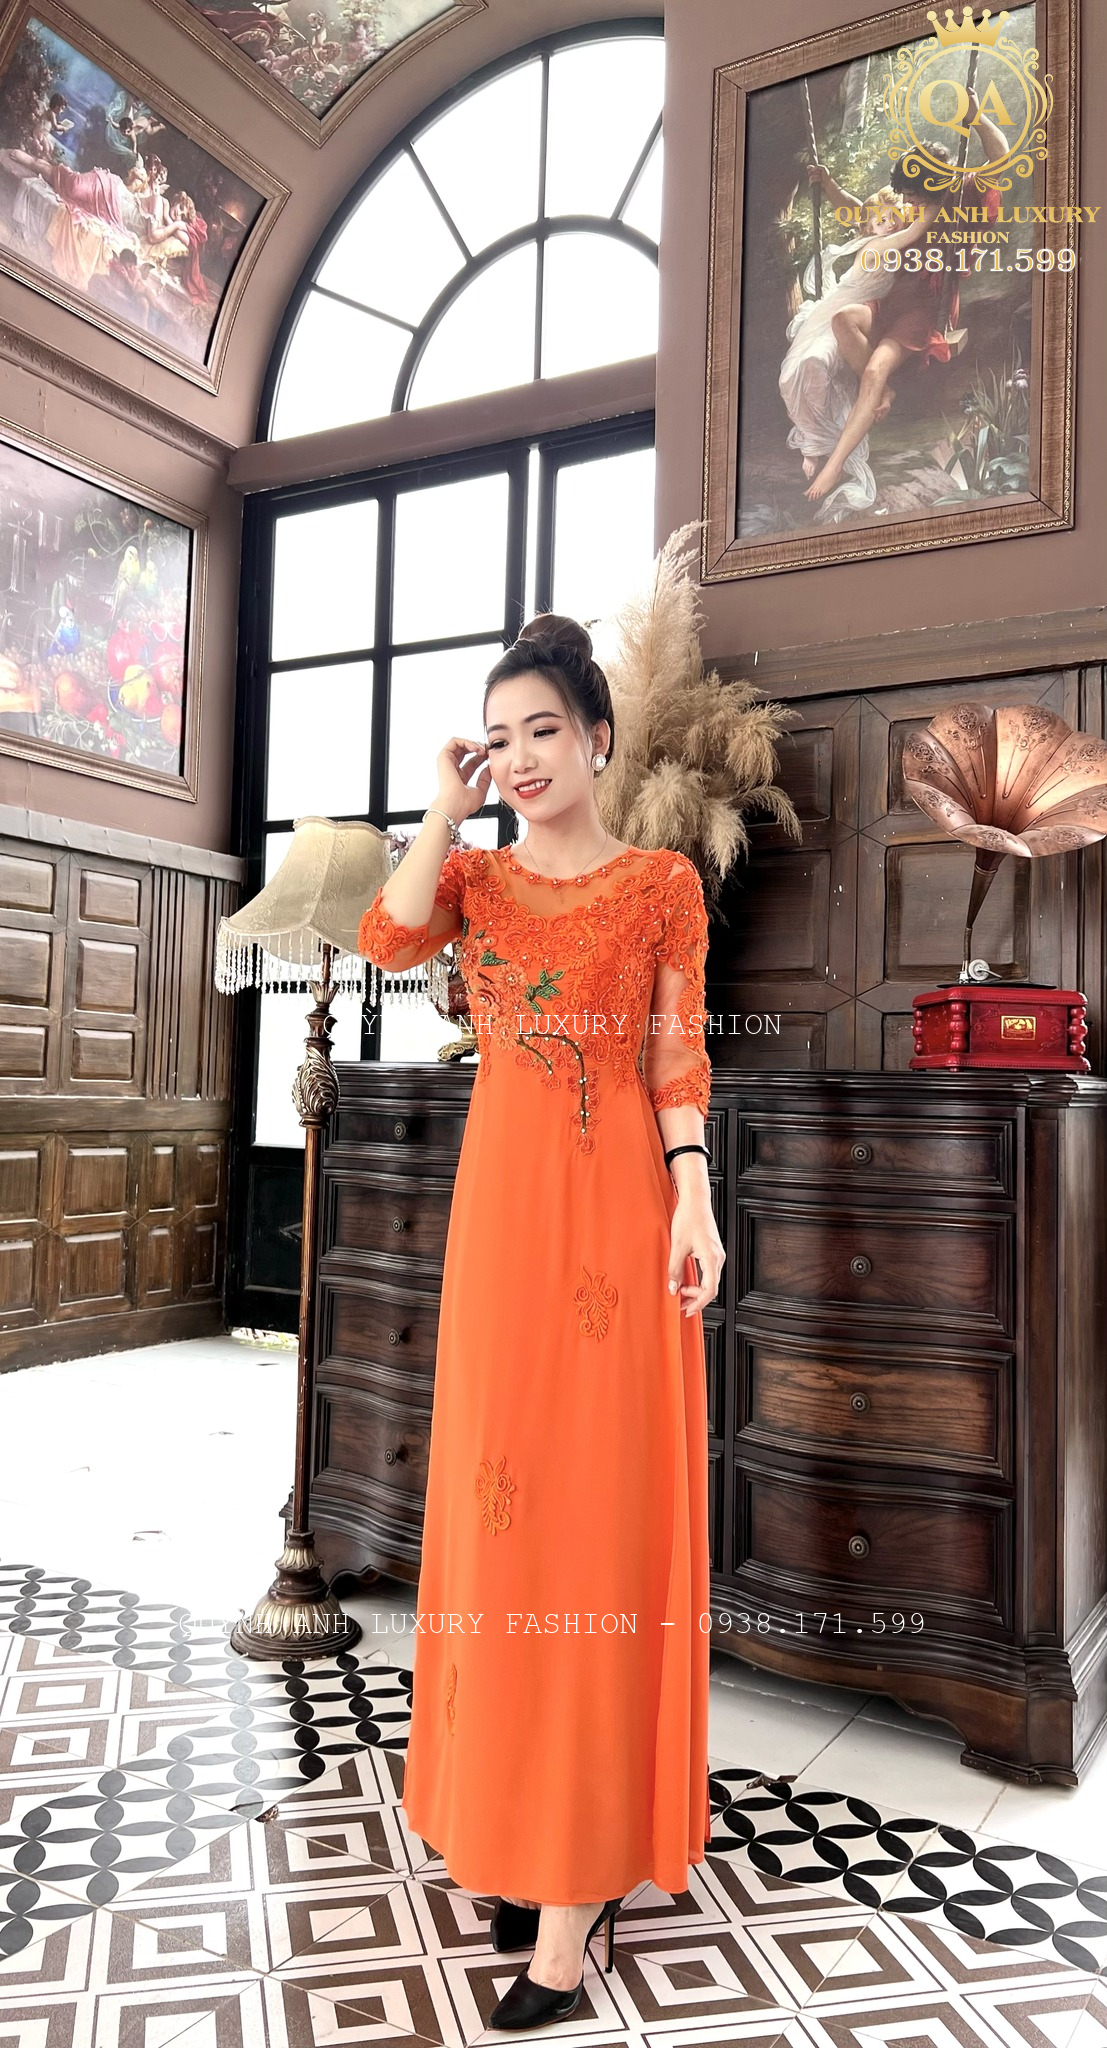 BST áo dài cổ tròn đặc biệt nhất của Quỳnh Anh Luxury Fashion